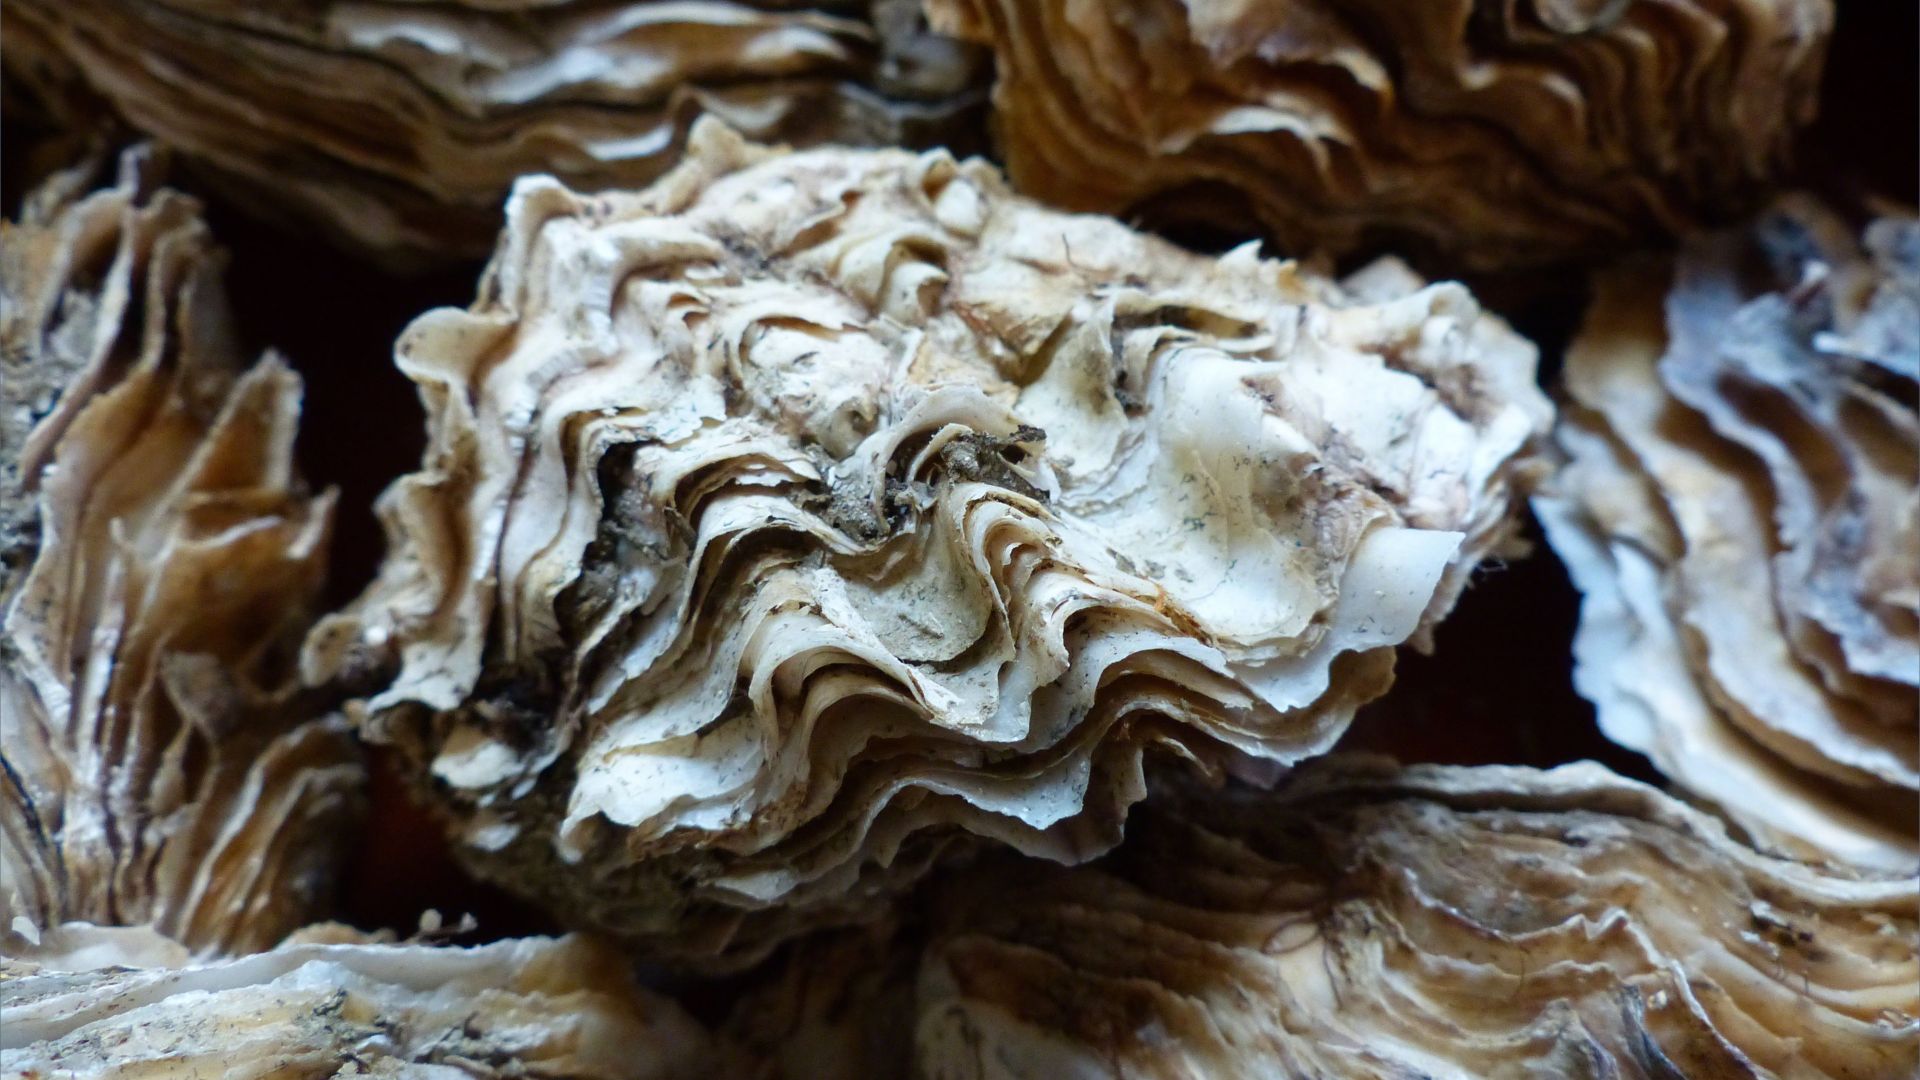 Crassostrea oyster shells